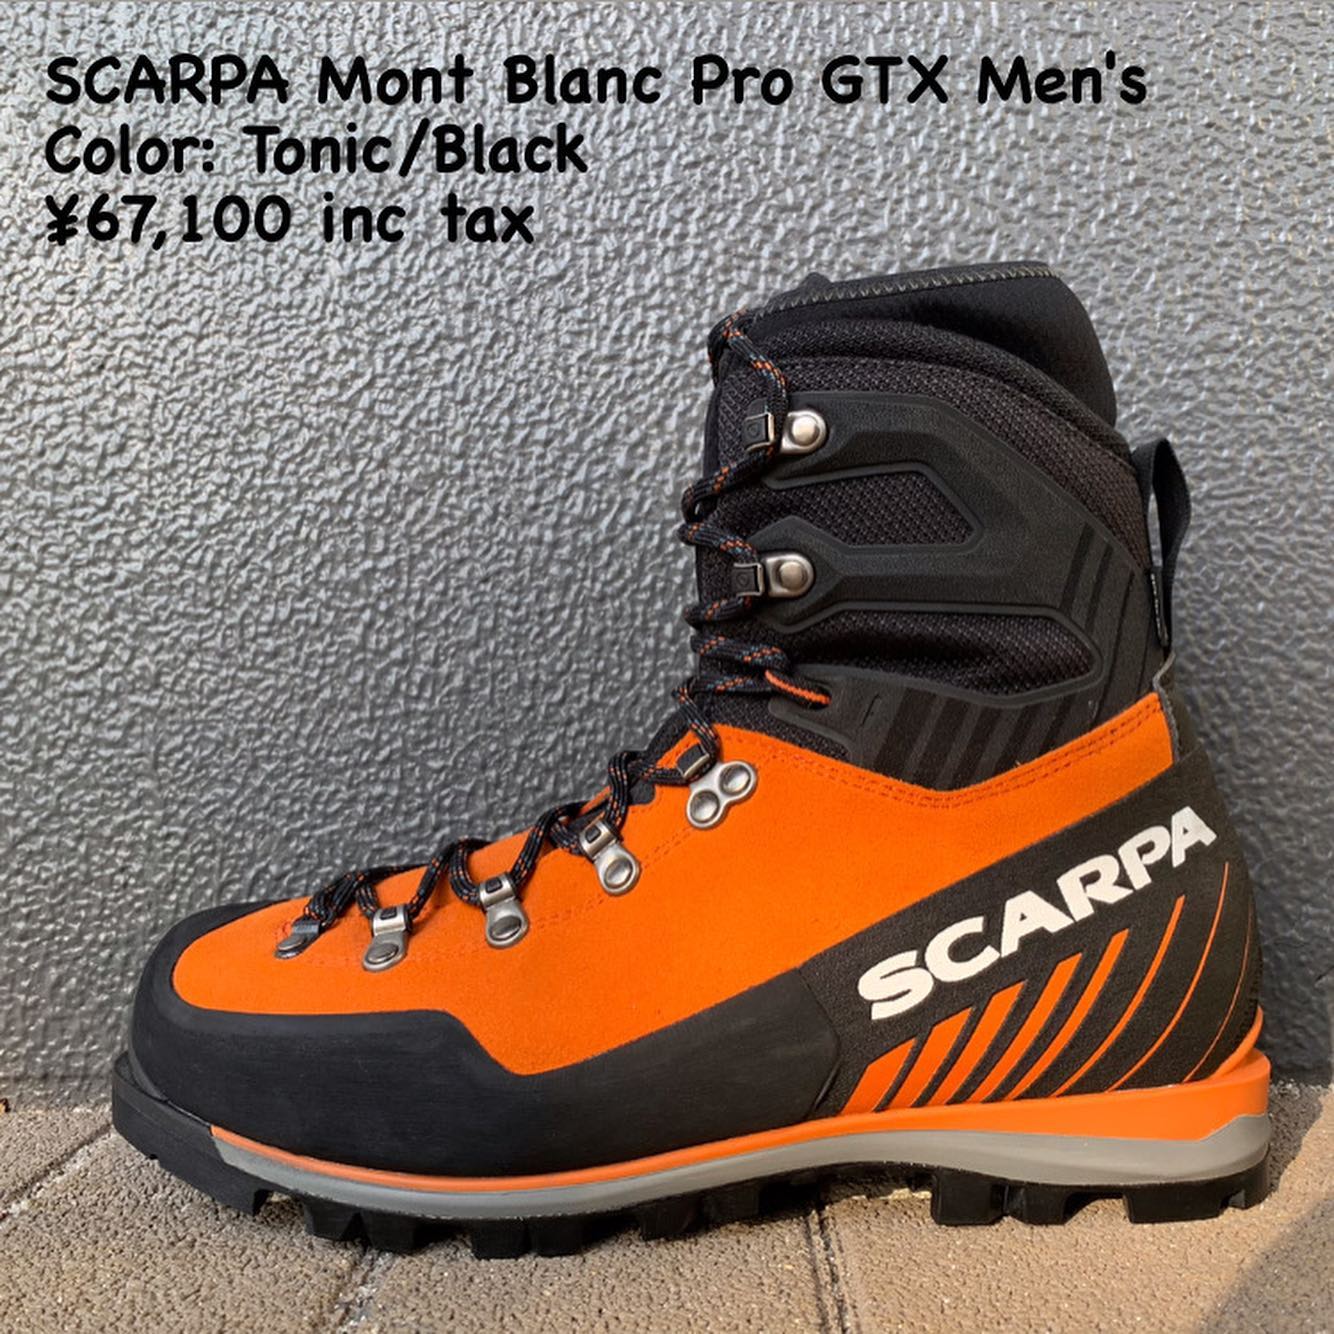 雪山登山で使用する登山靴『SCARPA モンブランプロGTX メンズ』のご紹介